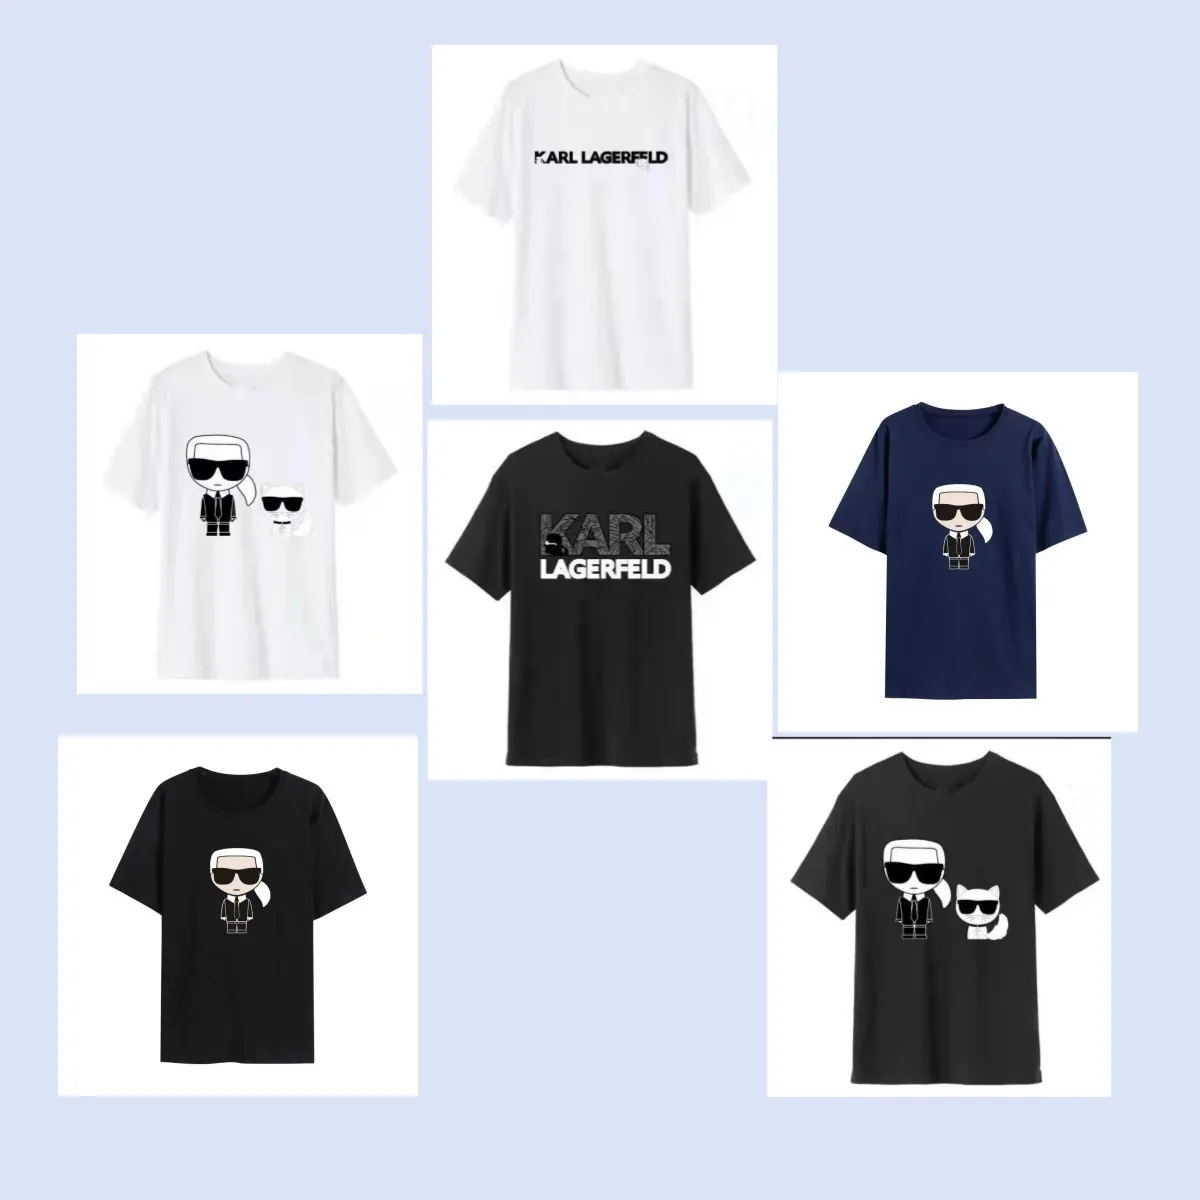 Männer T Shirts anime Lustige Karls hemden Casual Tee T-shirt Männer Mode Baumwolle T-shirts Drucken Kurze Oansatz Regelmäßige 00021